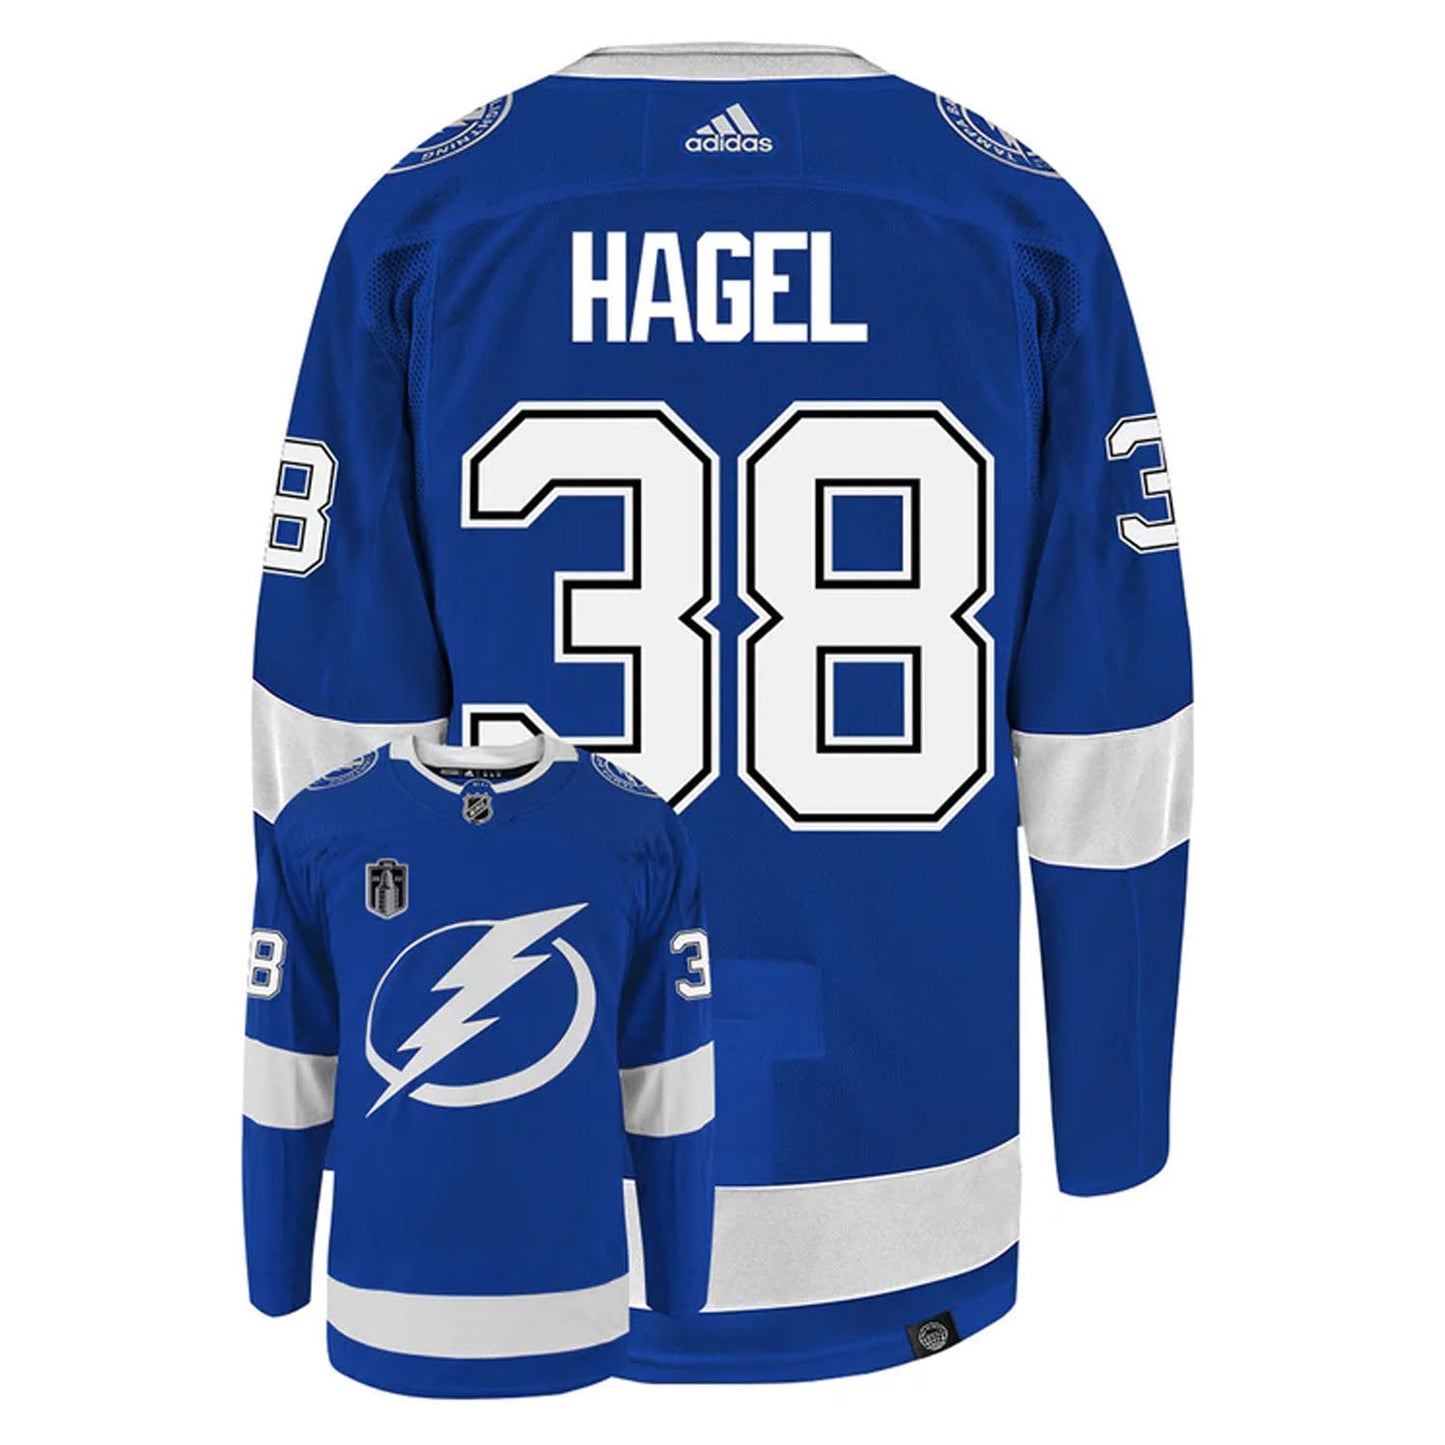 NHL Brandon Hagel Tampa Bay Lightning 38 Jersey